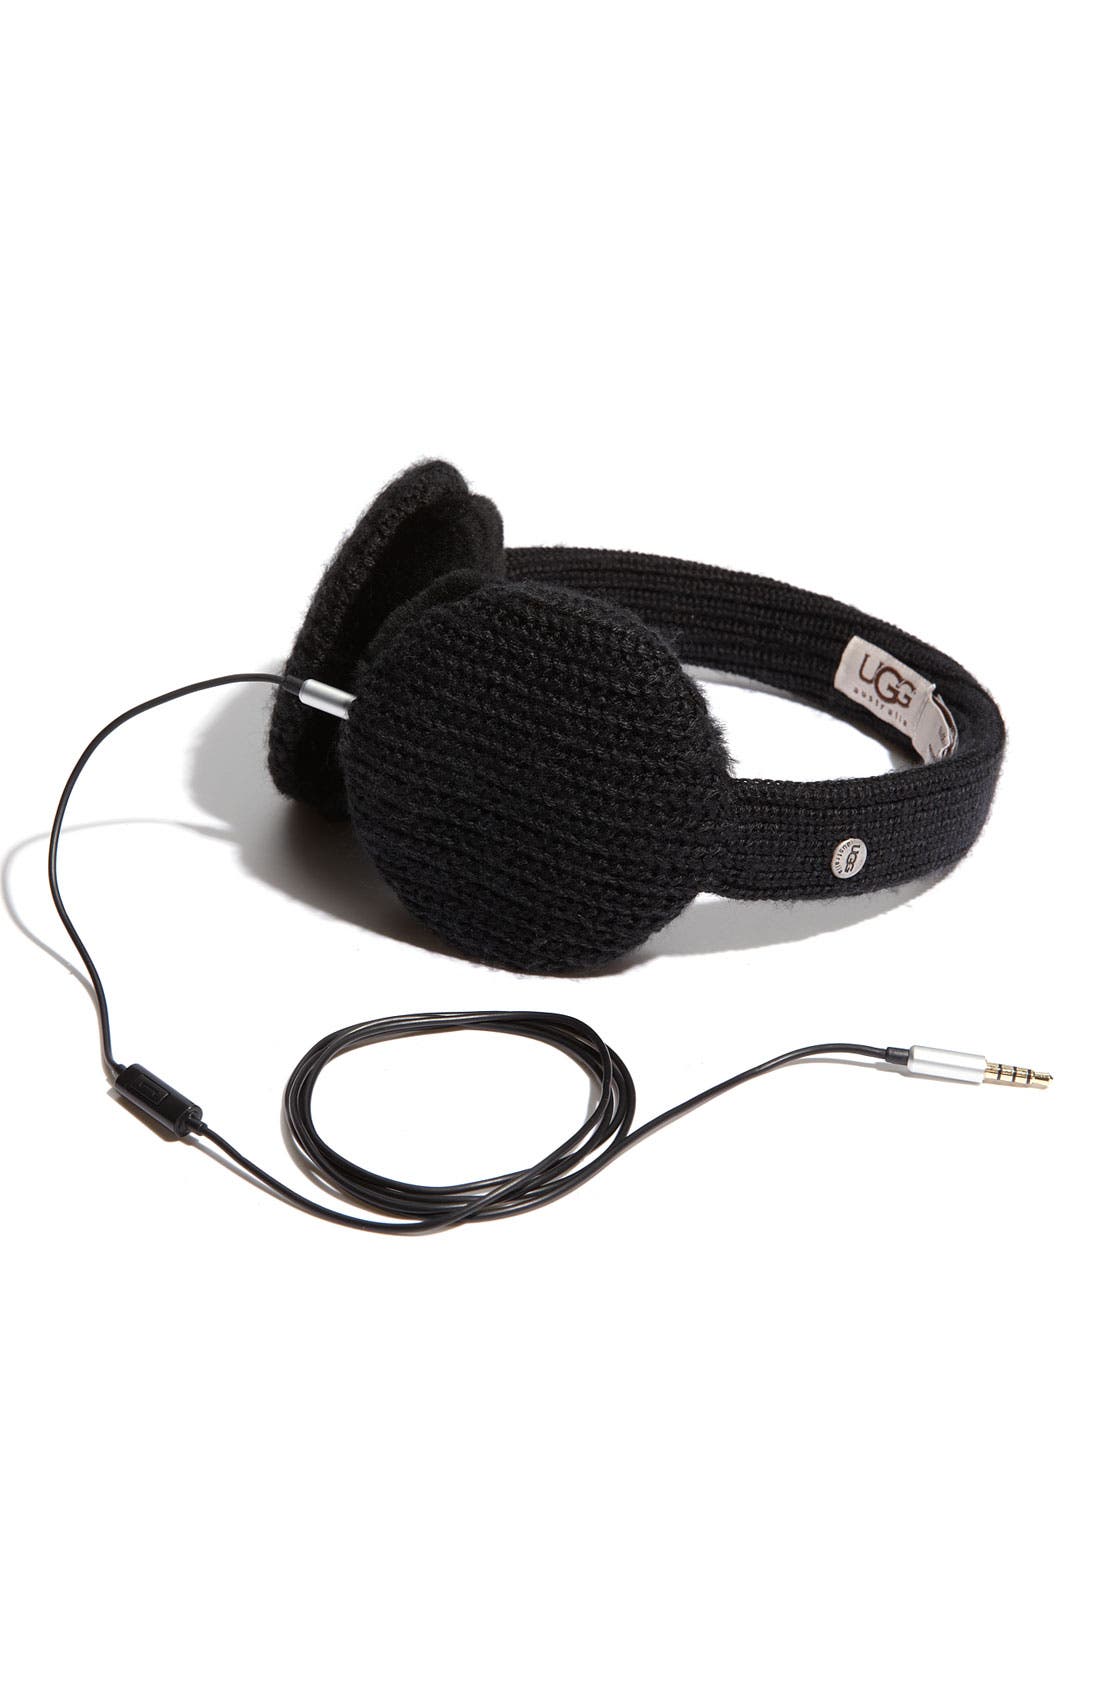 Ugg® Australia Headphone Earmuffs 